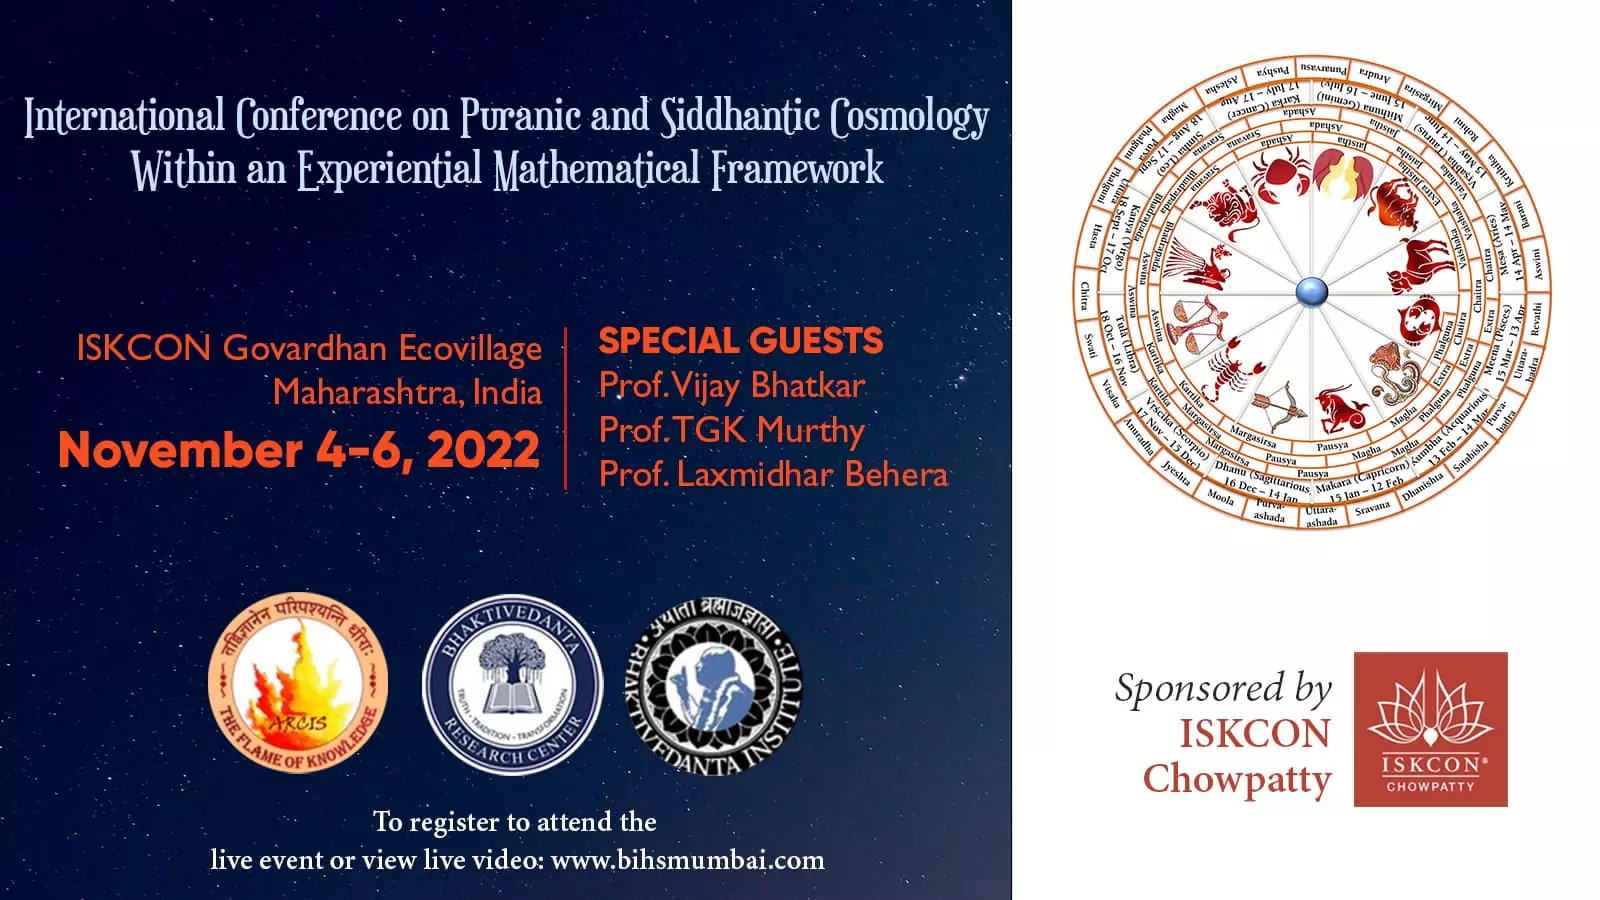 Conferencia de Cosmología Puránica y Siddhantica, Ecoaldea Govardhan, 4-6 de noviembre de 2022